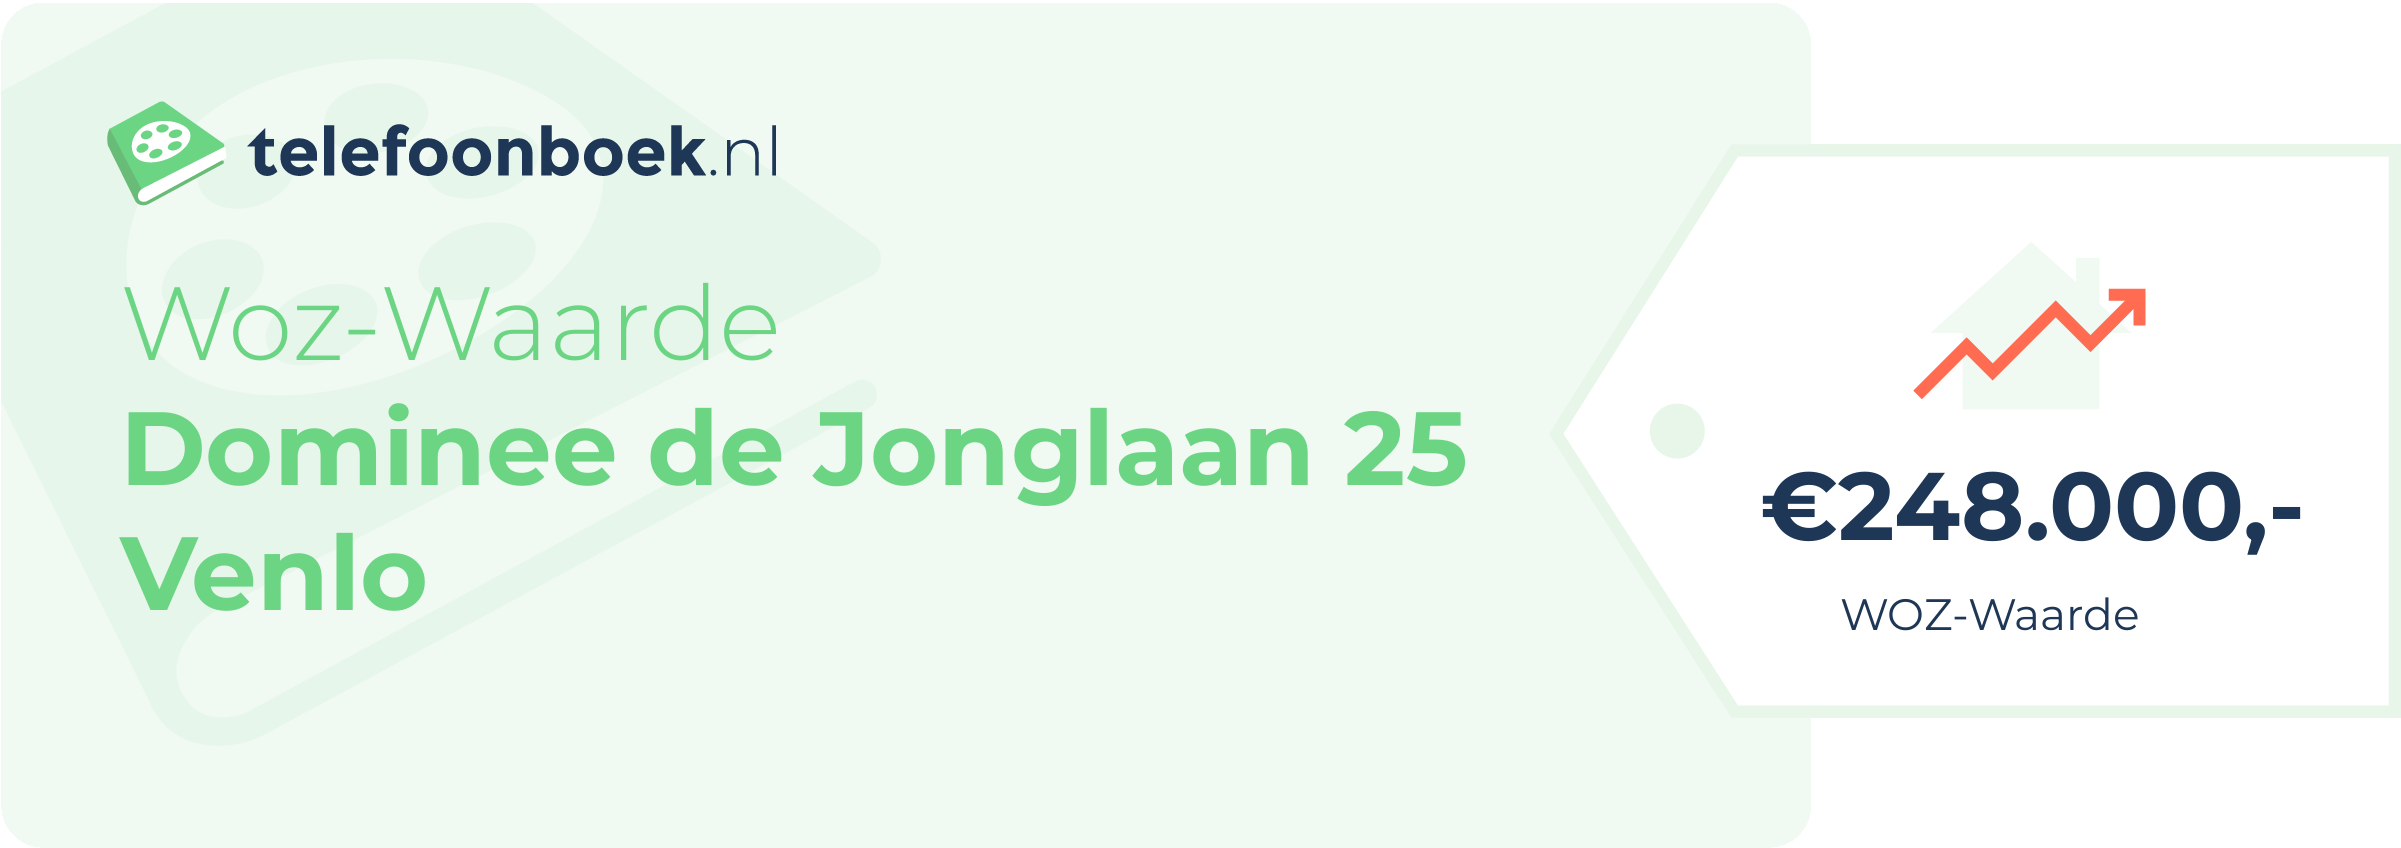 WOZ-waarde Dominee De Jonglaan 25 Venlo